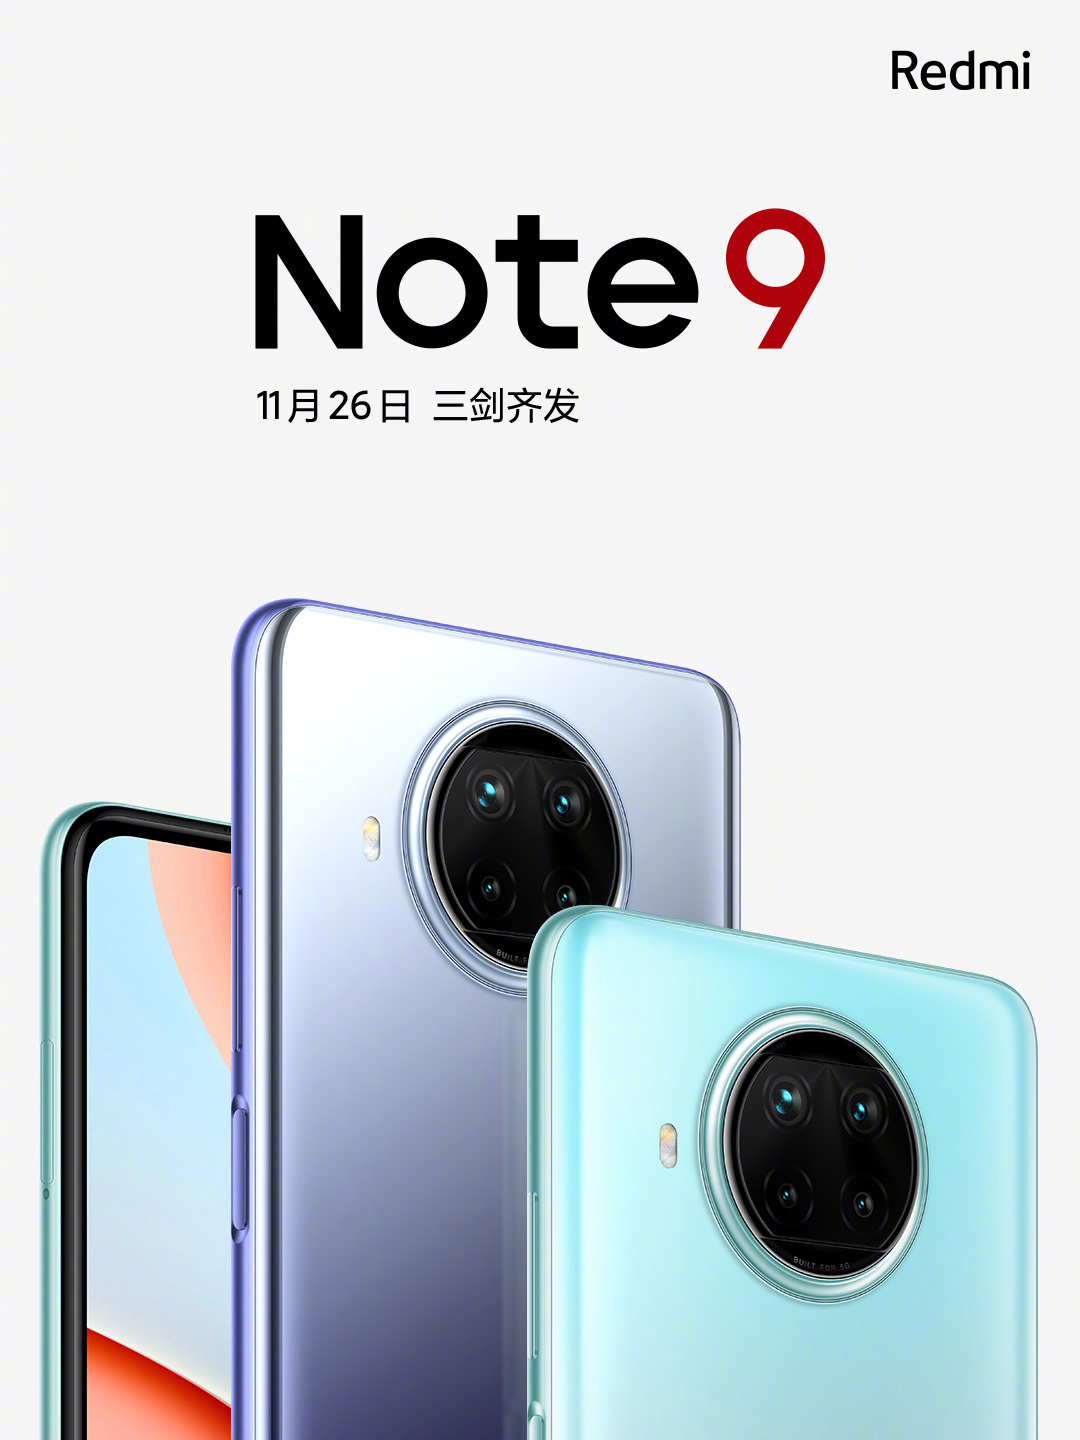 La fecha de lanzamiento de la serie Redmi Note 9 5G es el 26 de noviembre